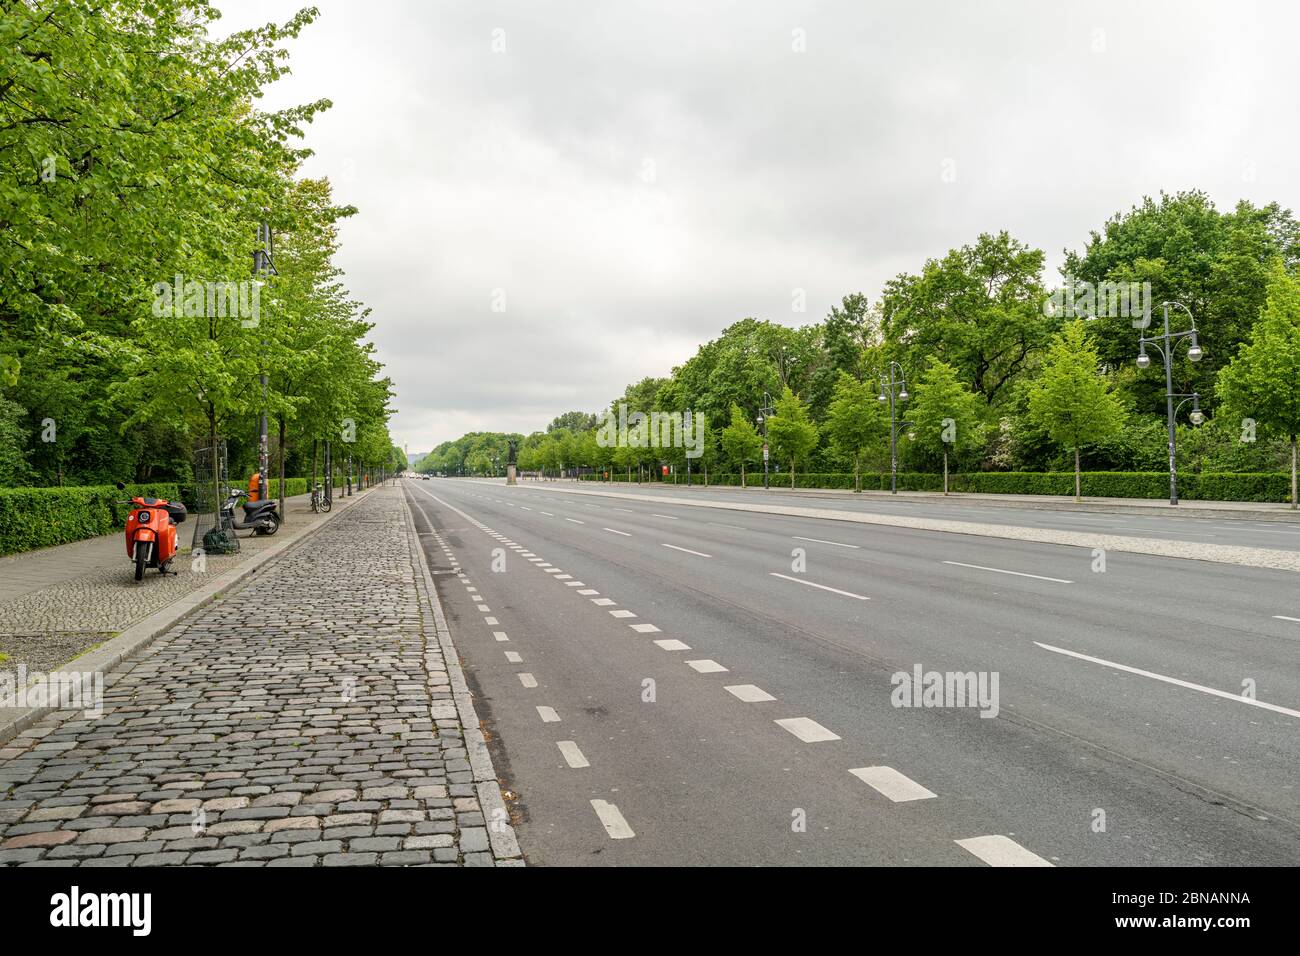 Guardando verso ovest lungo la strada principale conosciuta come Straße des 17. Juni (17 giugno Street in inglese) nel centro di Berlino, Germania Foto Stock